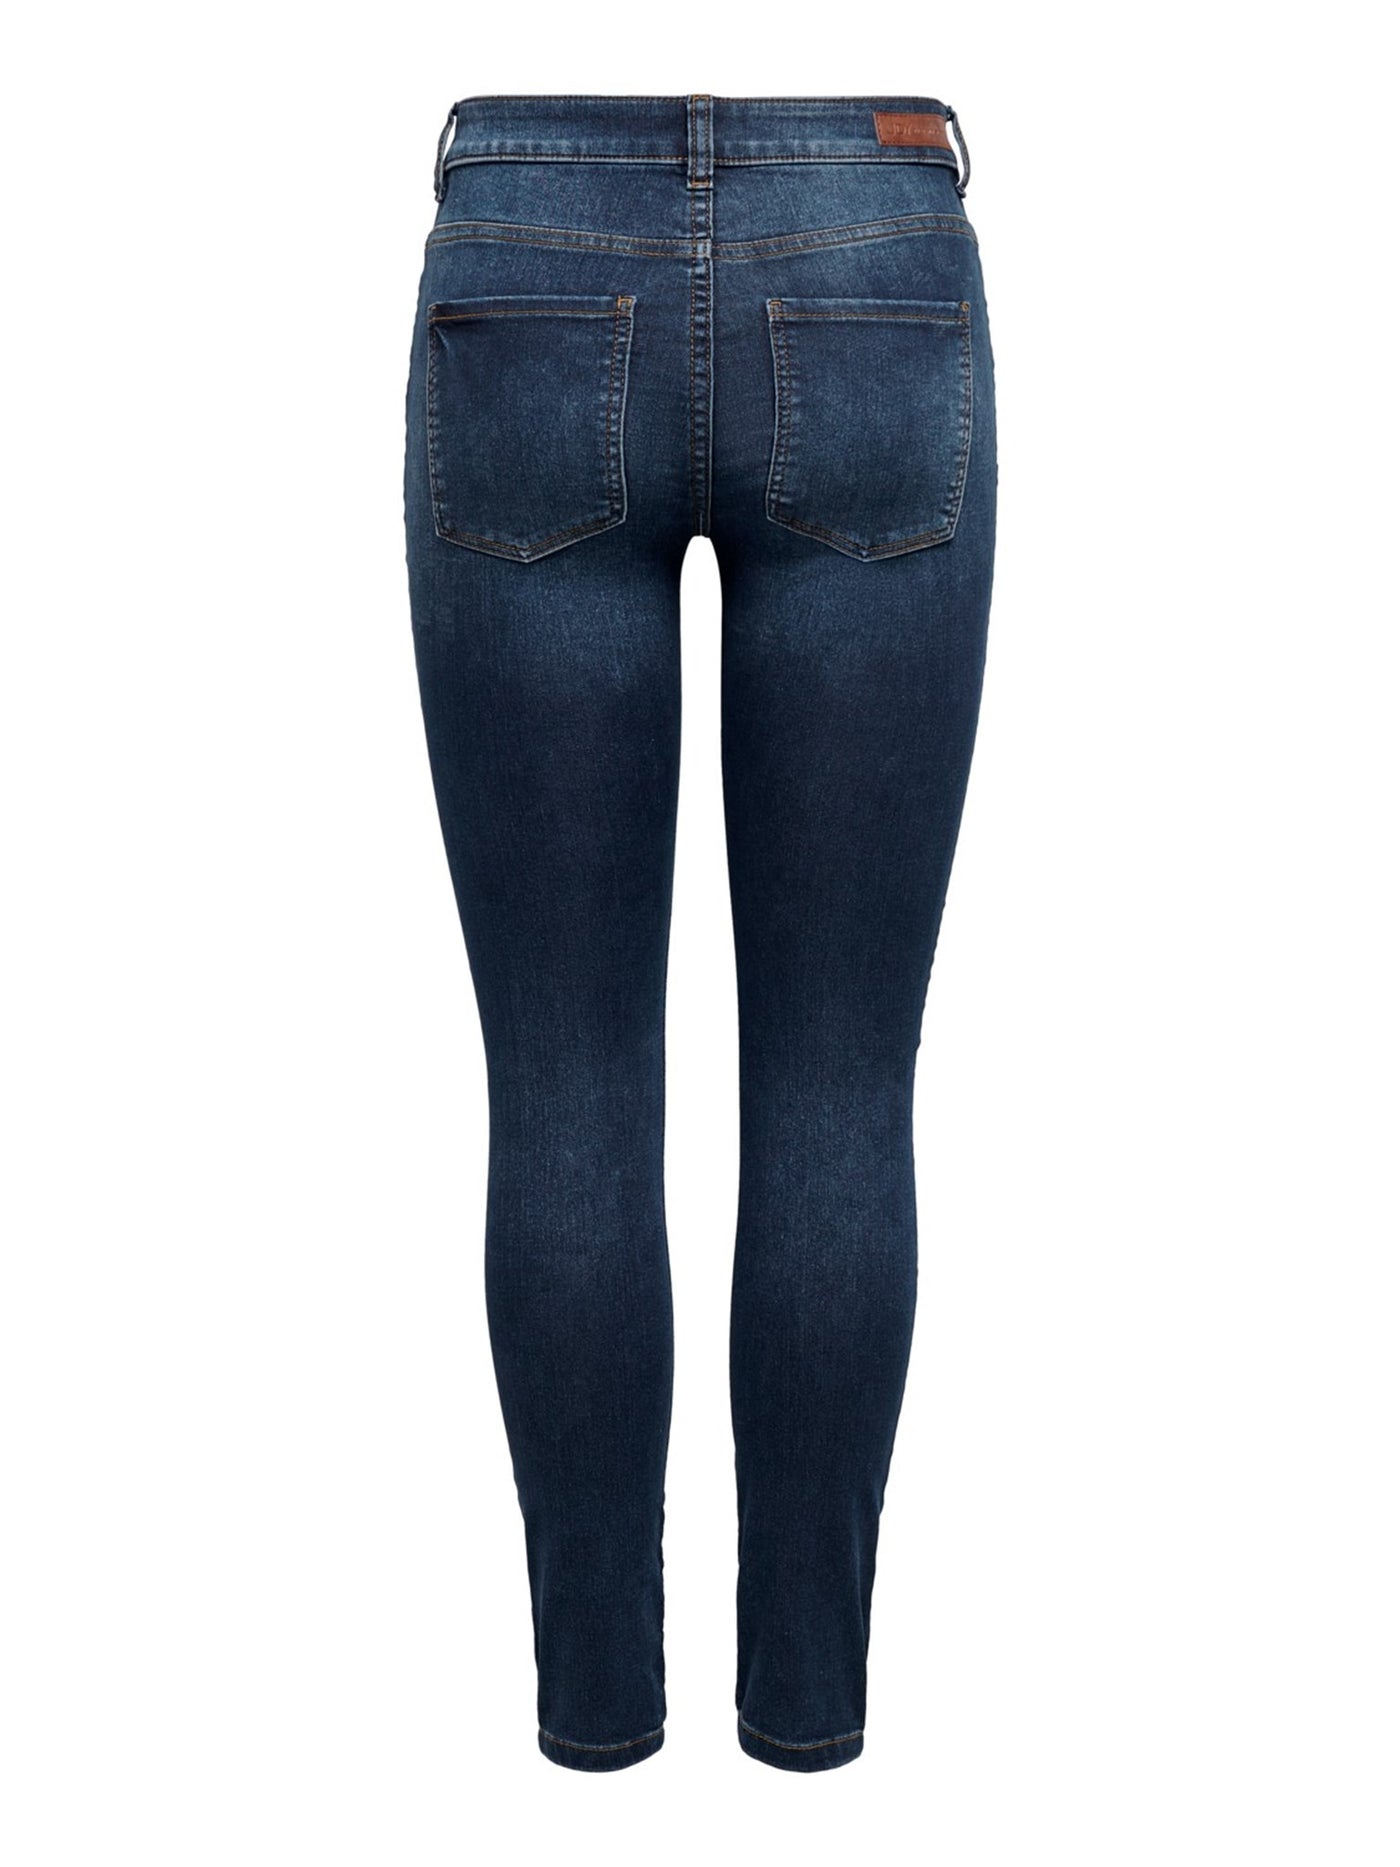 Performance Jeans - Blå denim (mid waist) - Jacqueline de Yong 3